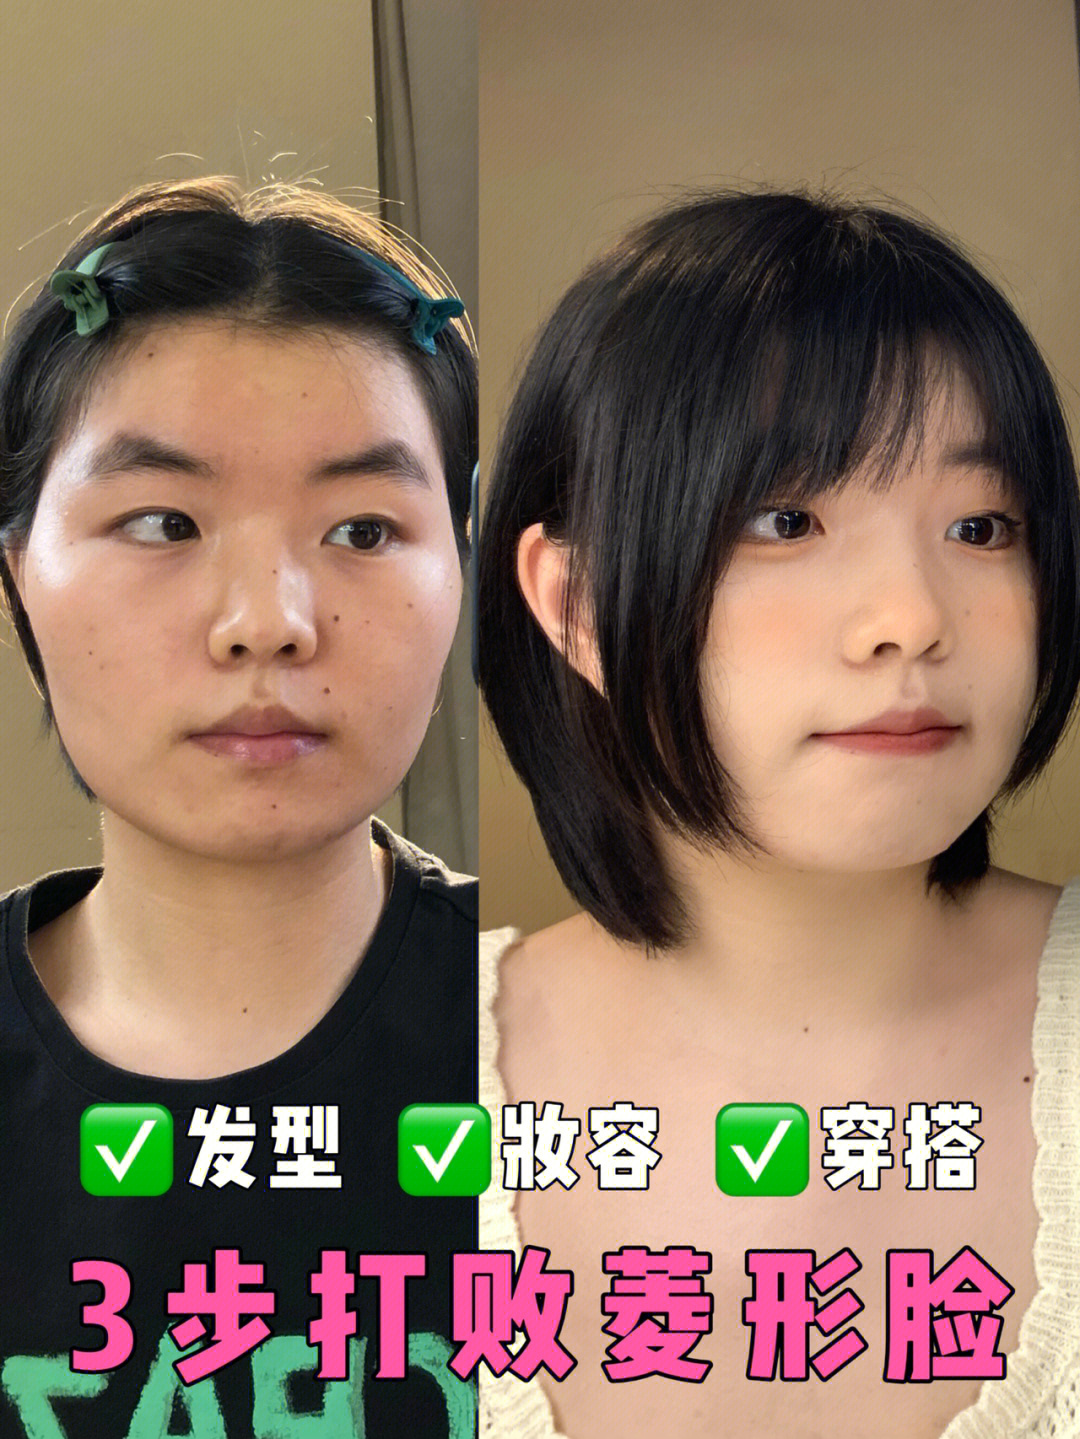 菱形脸画日系幼态妆发型思路:1,打破原有脸型结构,发型塑造头包脸效果